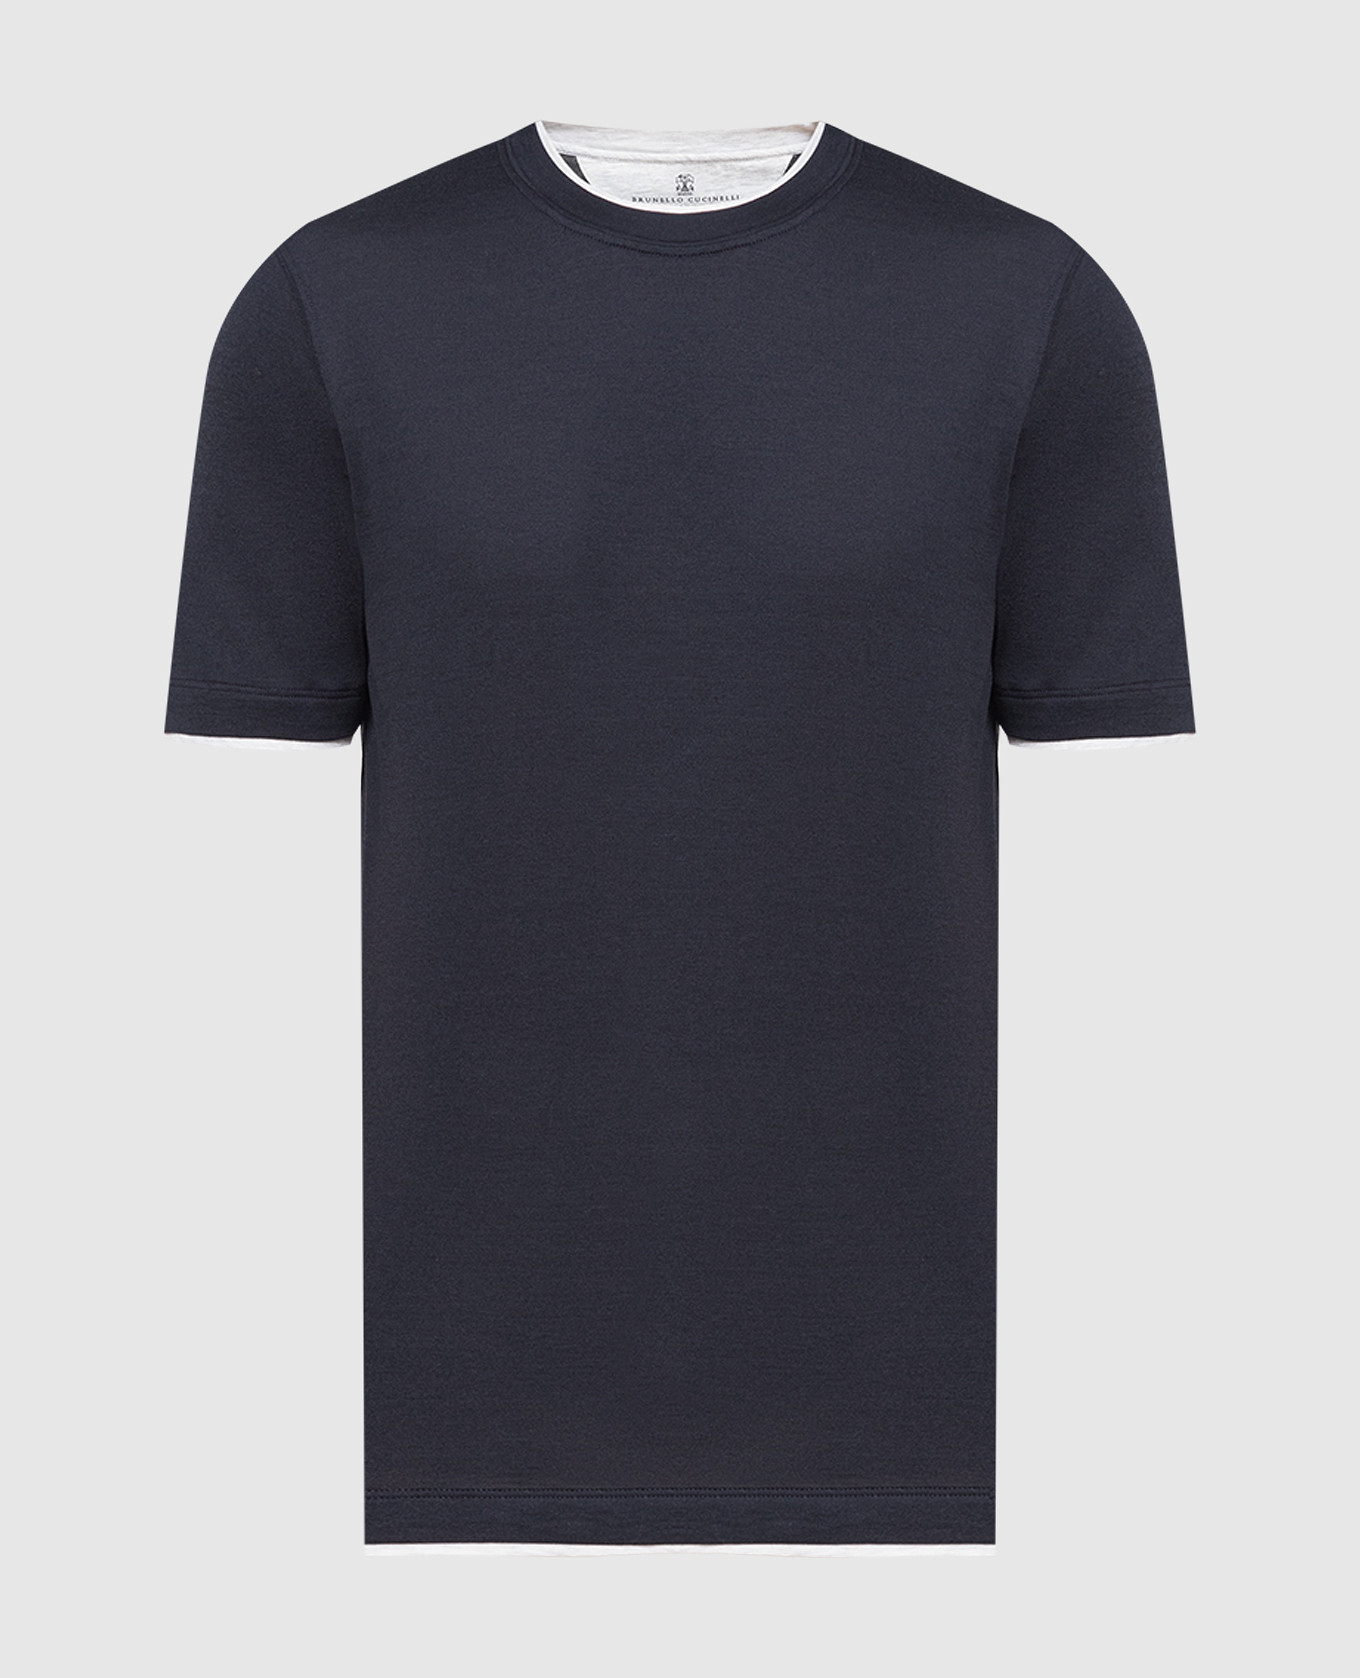 Темно-синяя футболка с эффектом наложения слоев